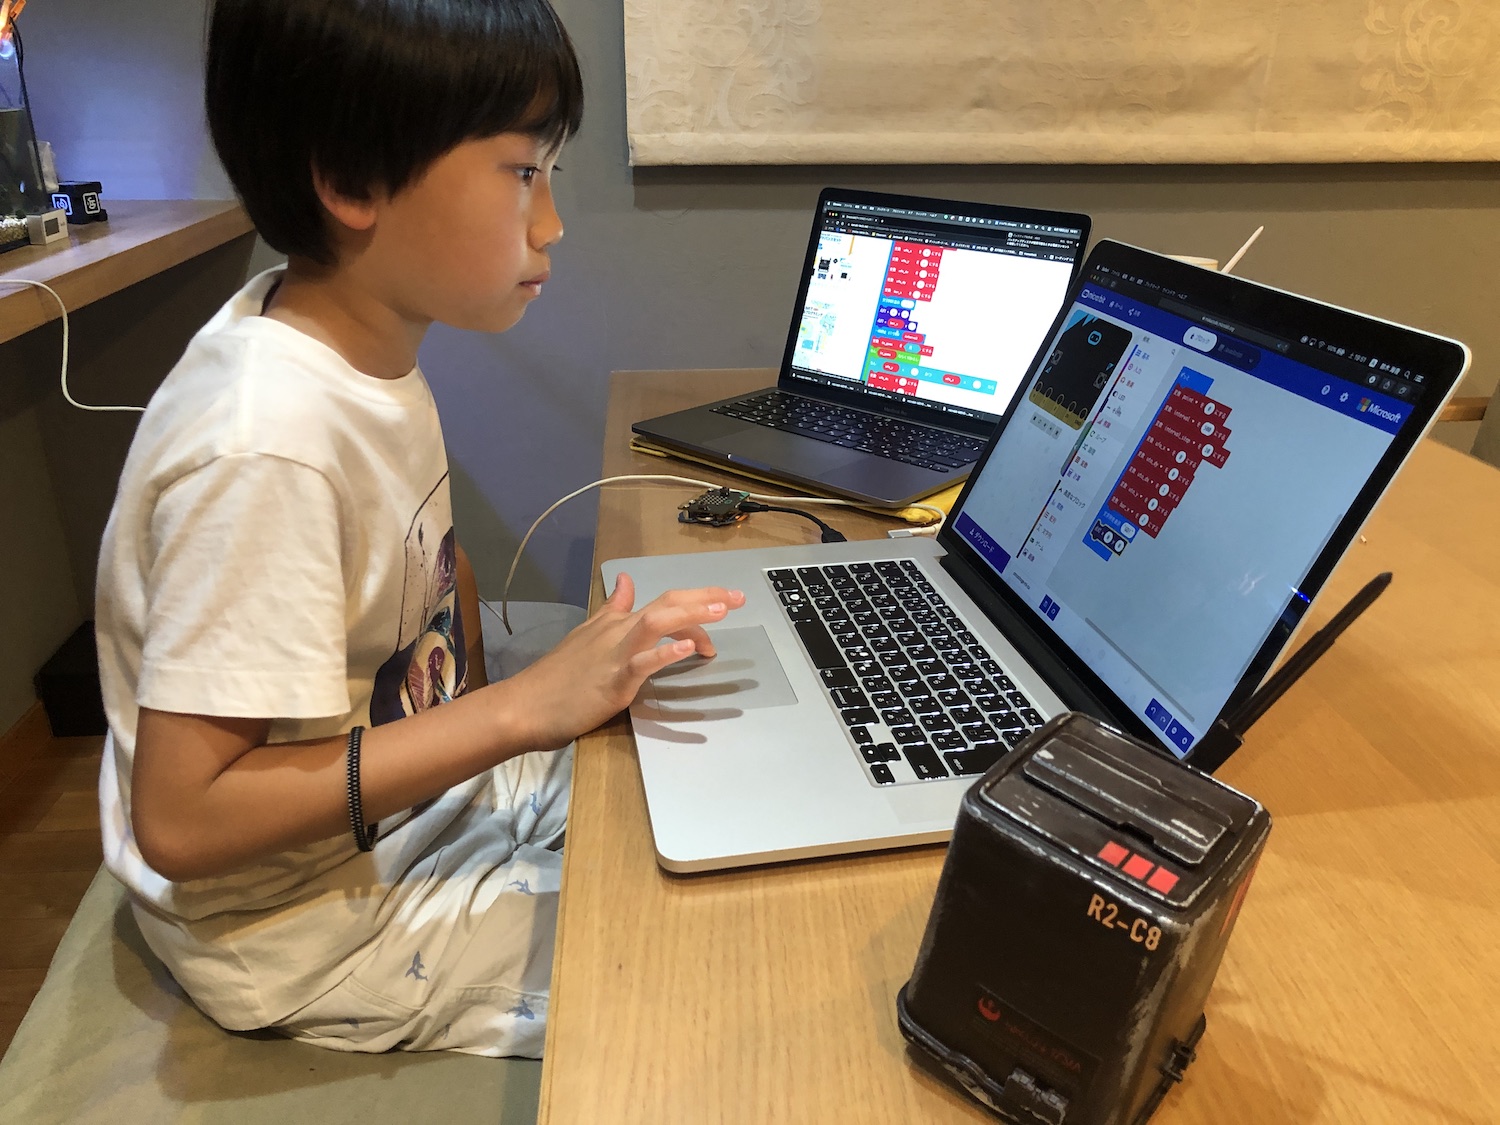 小学5年生 microbitでプログラミングの勉強